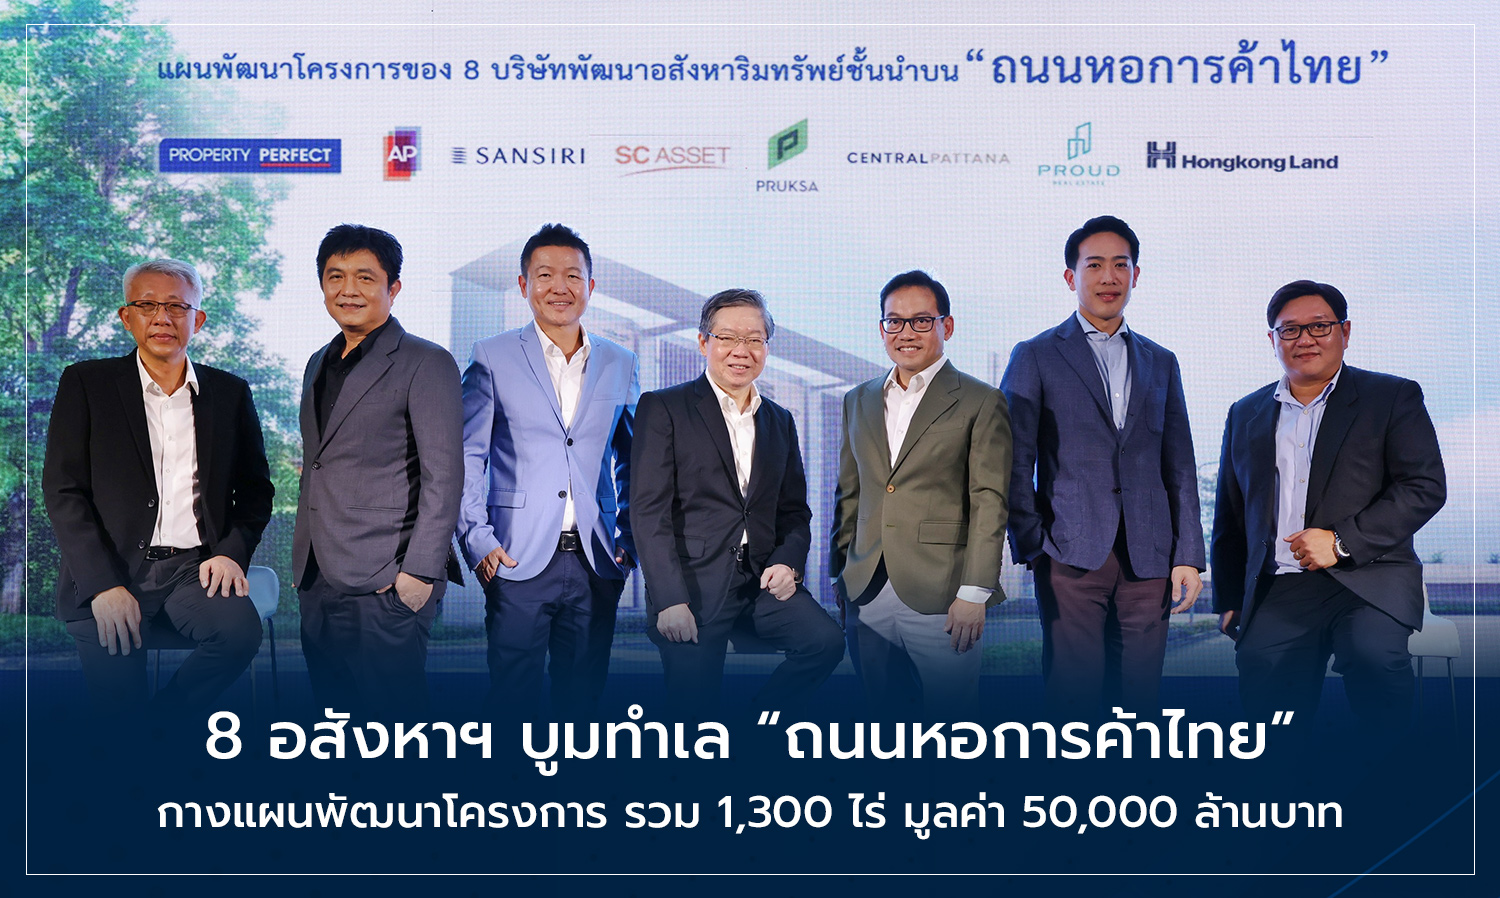 8 อสังหาฯ บูมทำเล ถนนหอการค้าไทย กางแผนพัฒนาโครงการ รวม 1,300 ไร่ มูลค่า 50,000 ล้านบาท